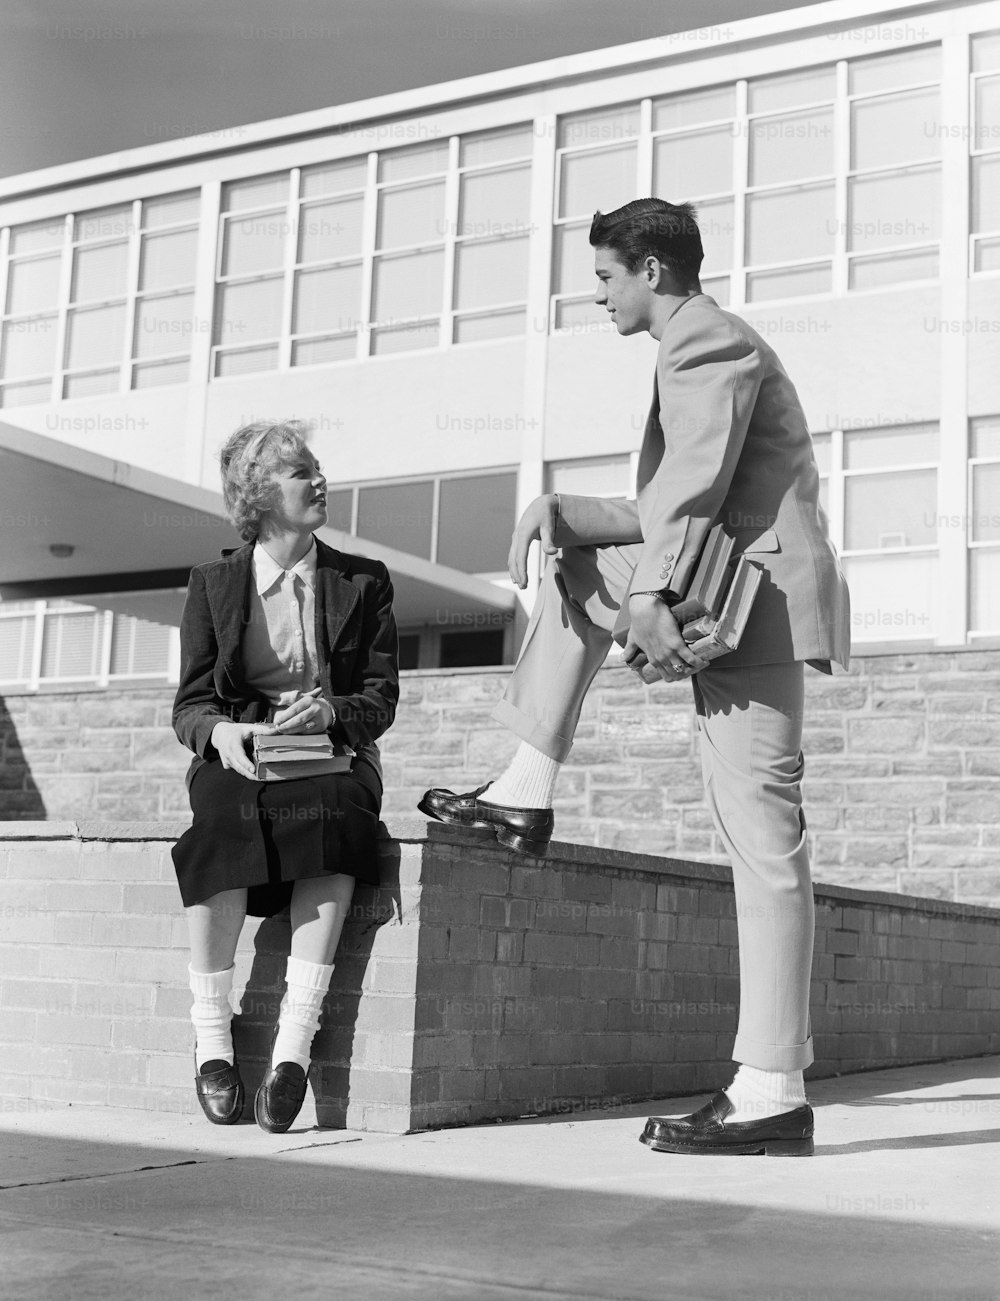 STATI UNITI - 1950 CIRCA: Ragazza del liceo seduta sul muro, che parla con un ragazzo adolescente.